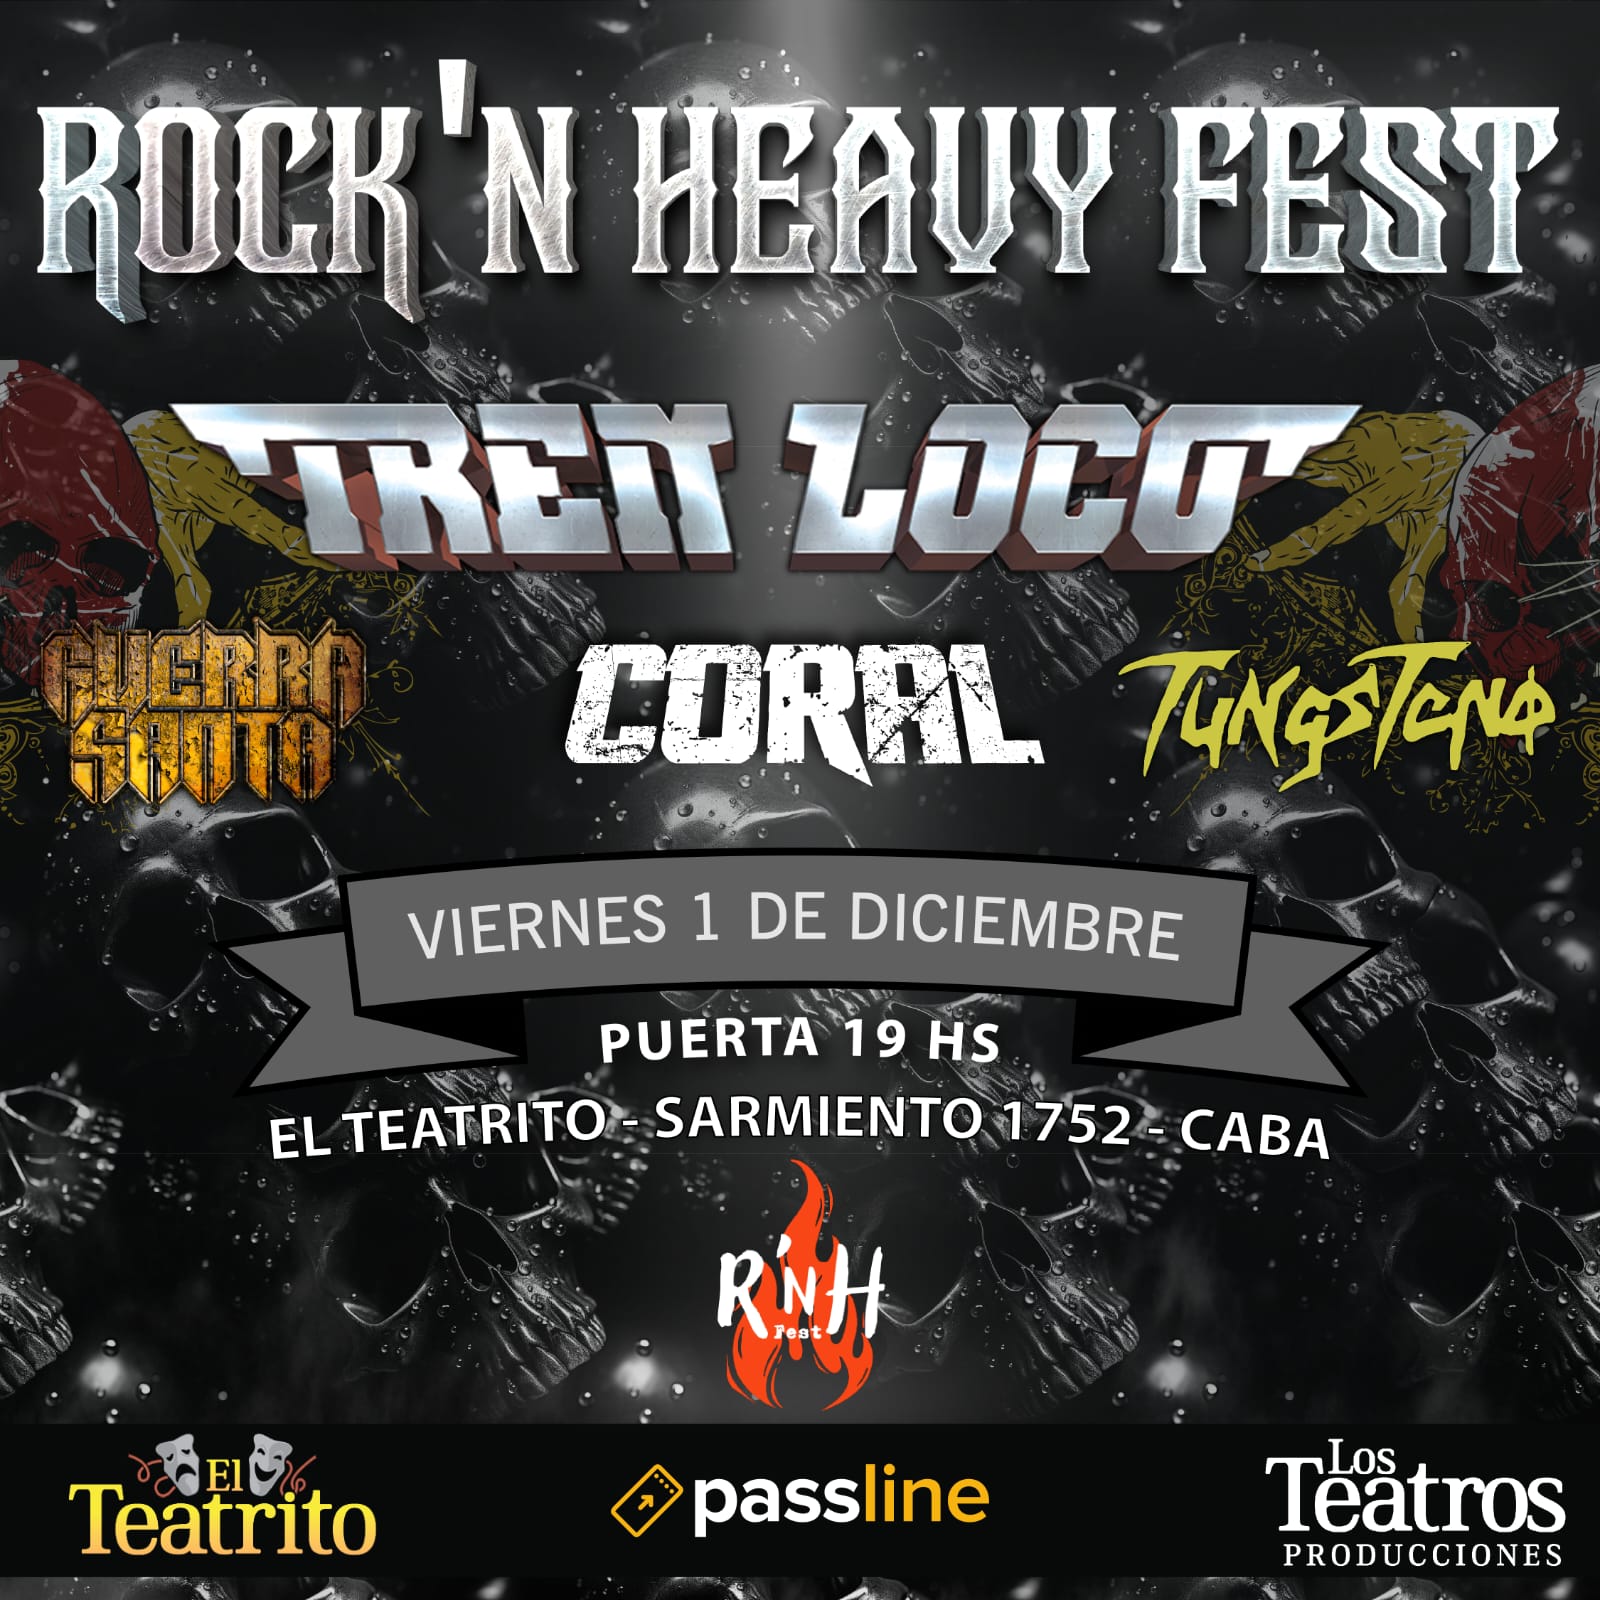 RockÂ´n Heavy Fest: el gran evento de metal cerrando el aÃ±o en capital federalÂ 